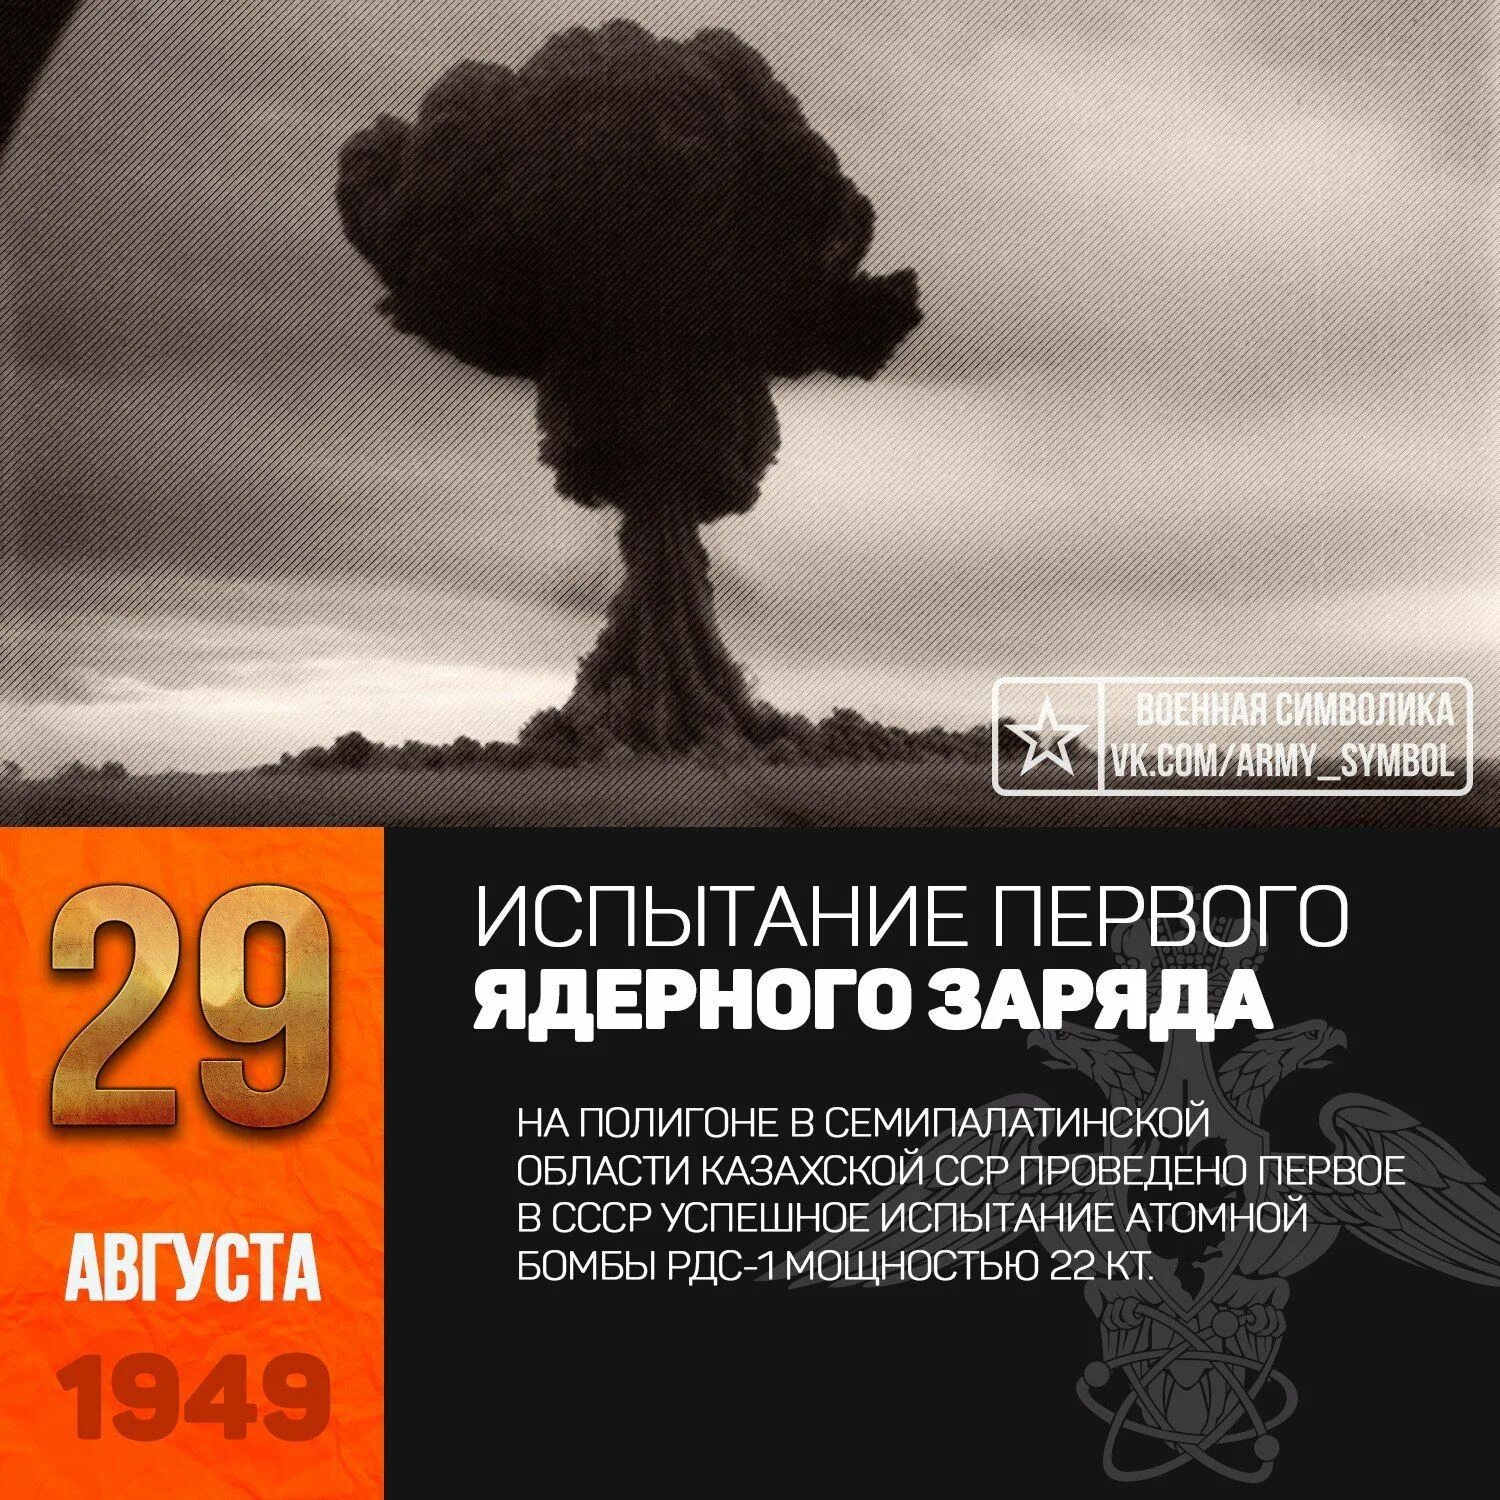 Испытание первой. 29 Августа 1949 испытание атомной бомбы в СССР. 29 Августа 1949 г испытание первой атомной бомбы в СССР РДС-1. 29 Августа 1949 года на Семипалатинском полигоне испытали РДС-1. Первая Советская атомная бомба РДС-1 взрыв.